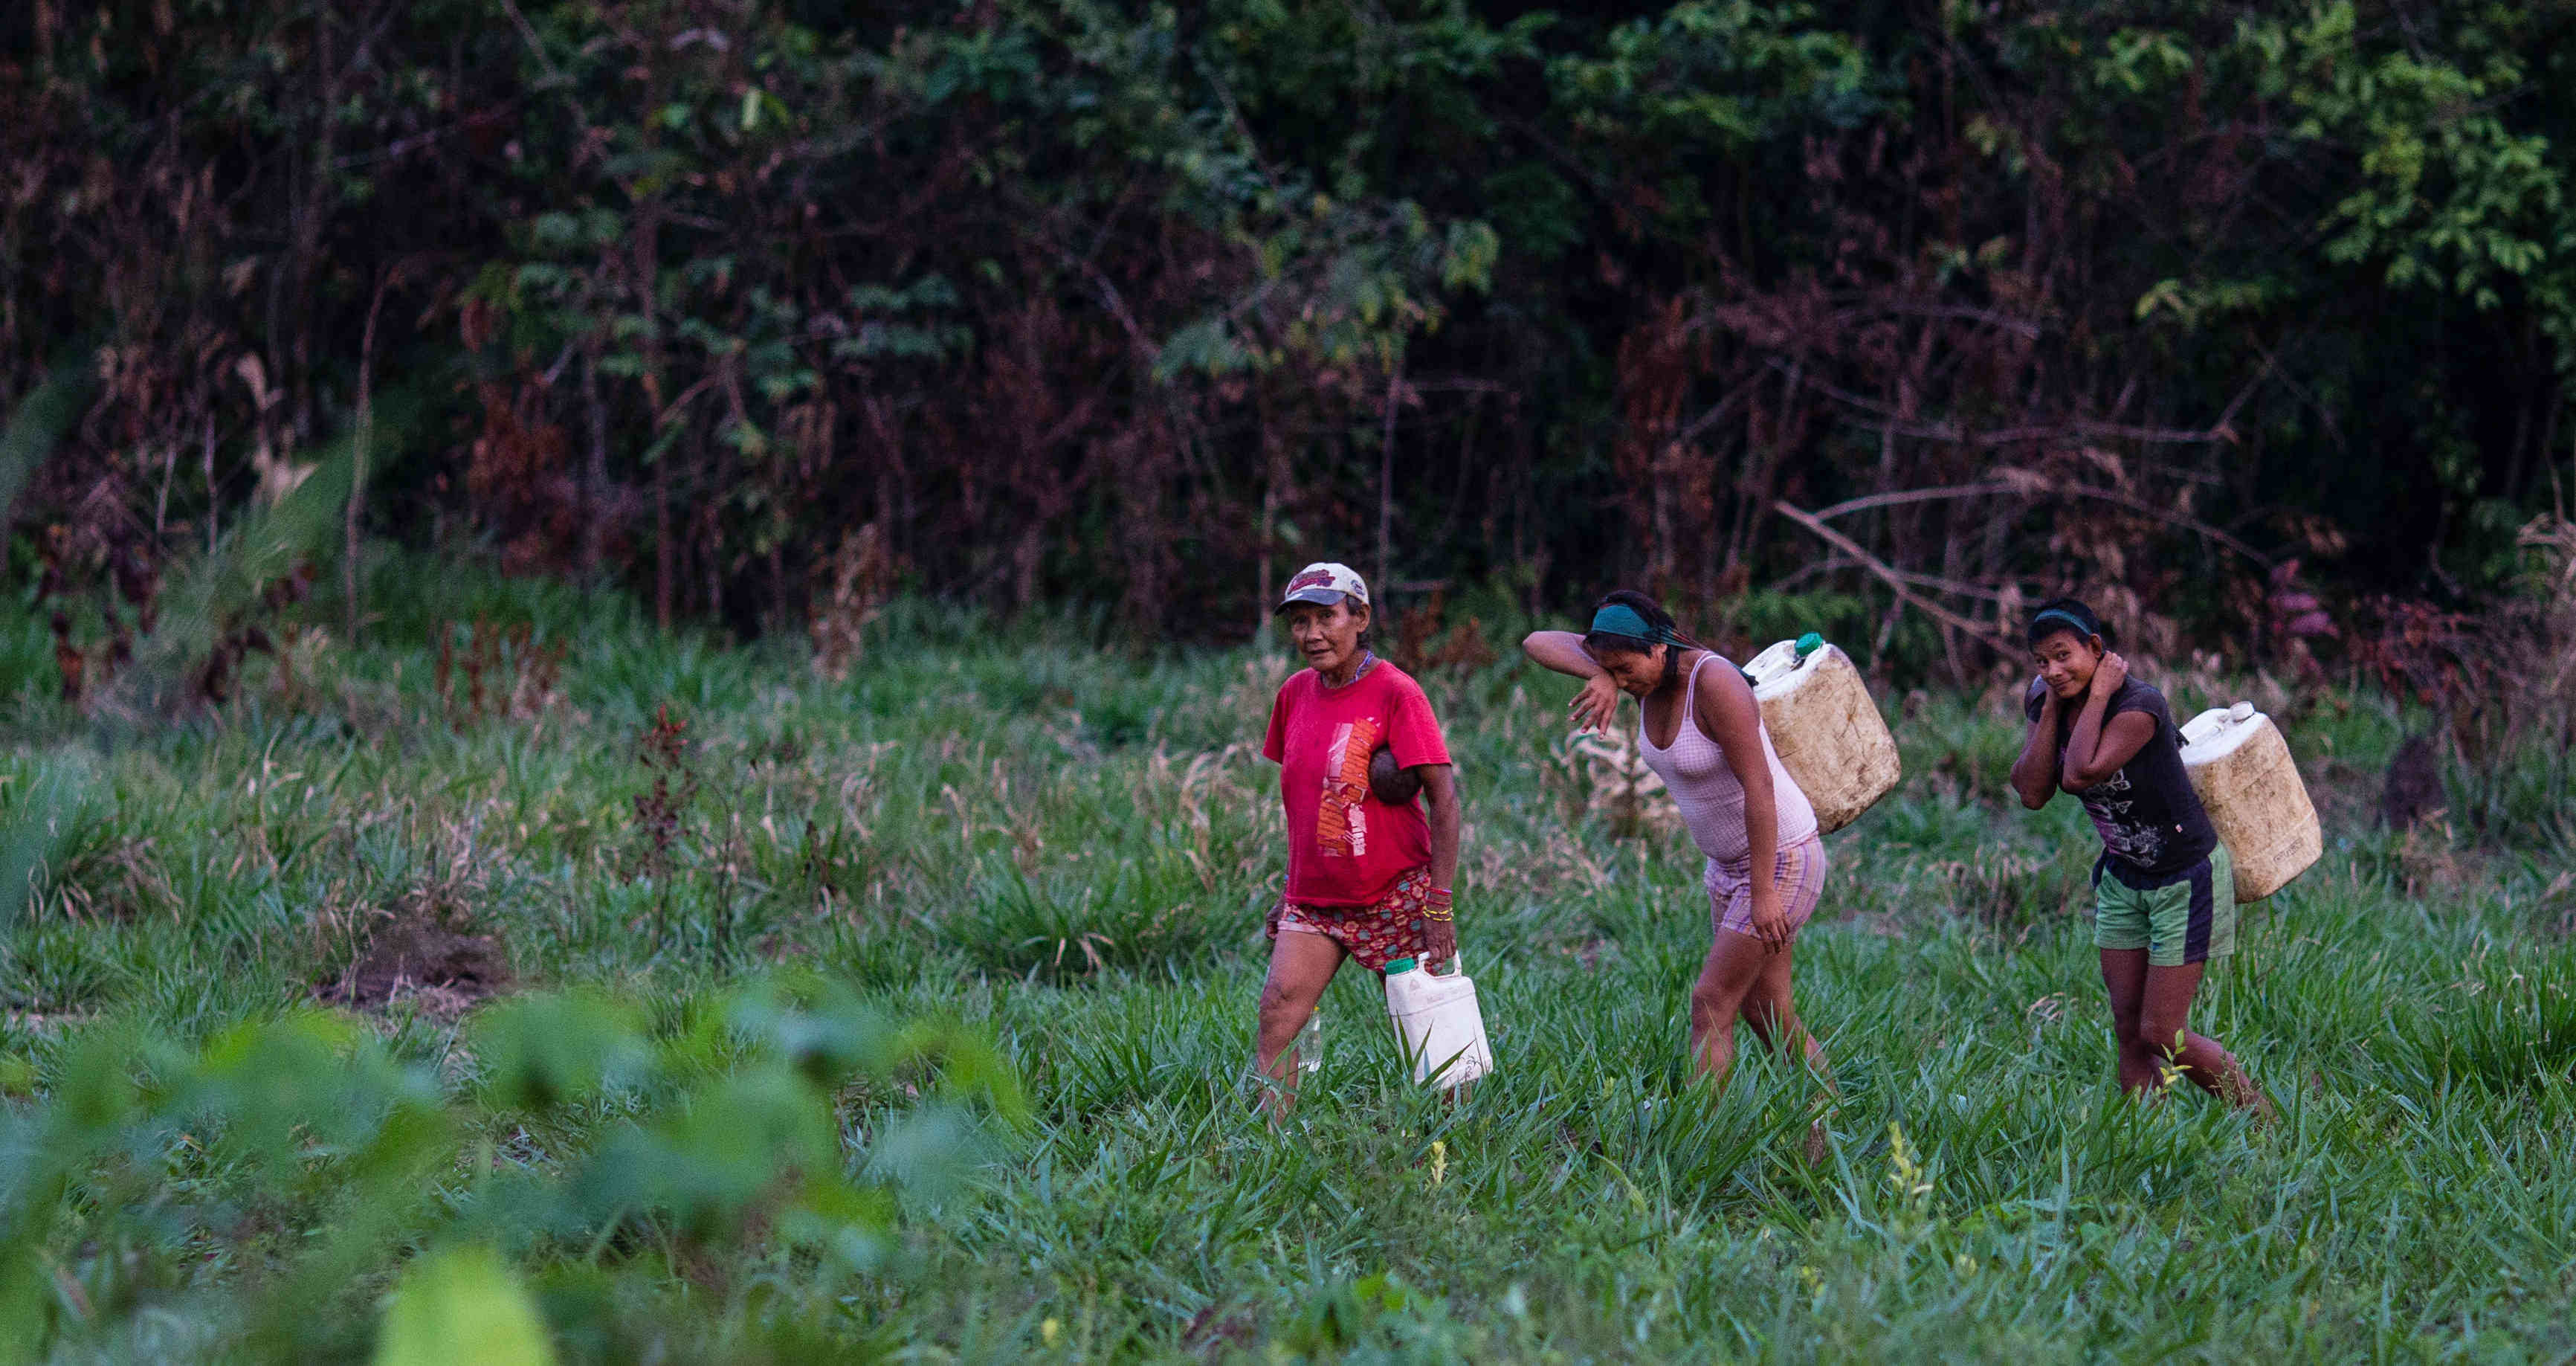 (Video) Campesinos e indígenas son obligados a transportar droga en Colombia